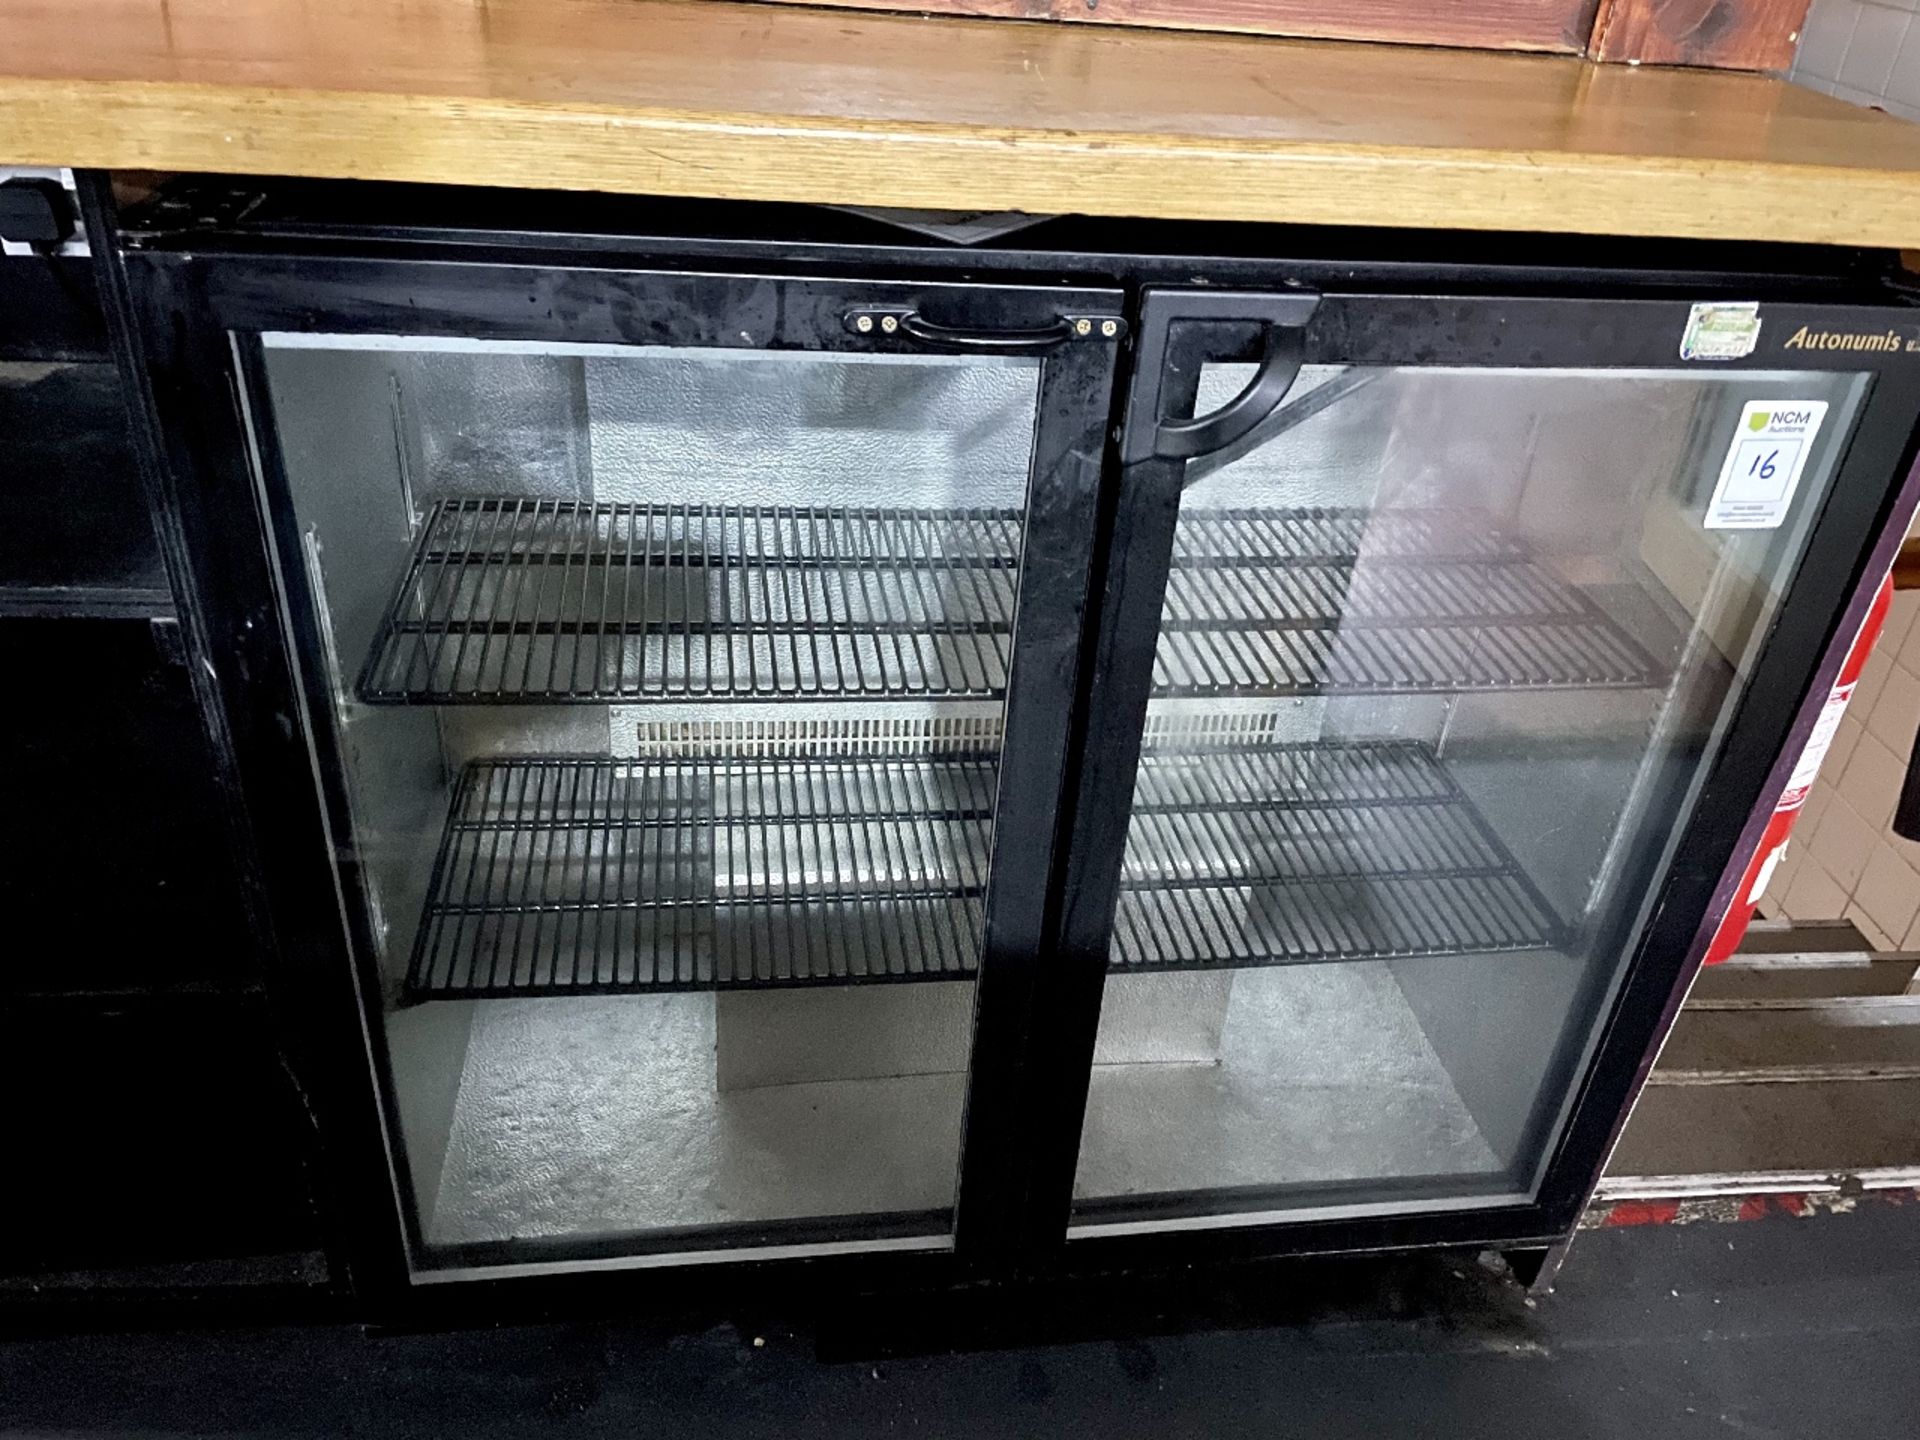 Autonumis Drinks Refrigerator - Image 3 of 3